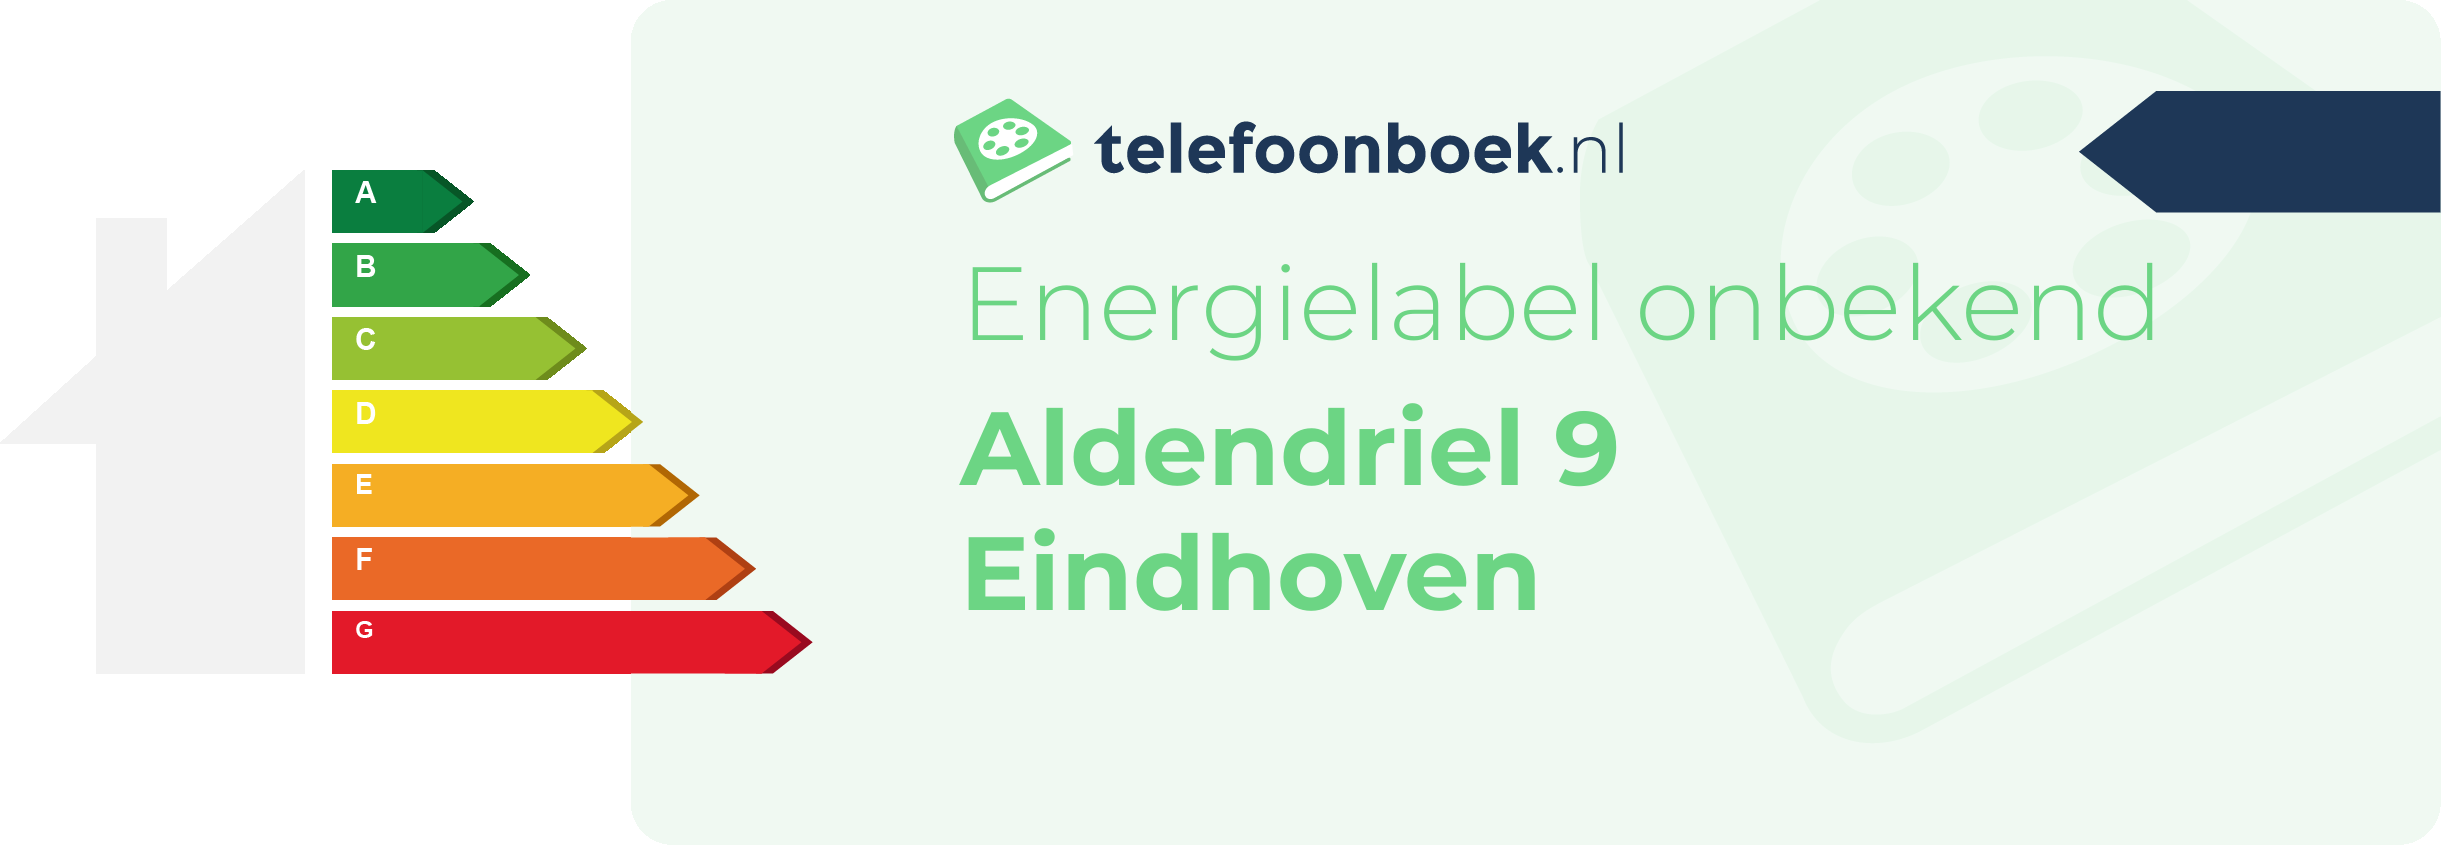 Energielabel Aldendriel 9 Eindhoven